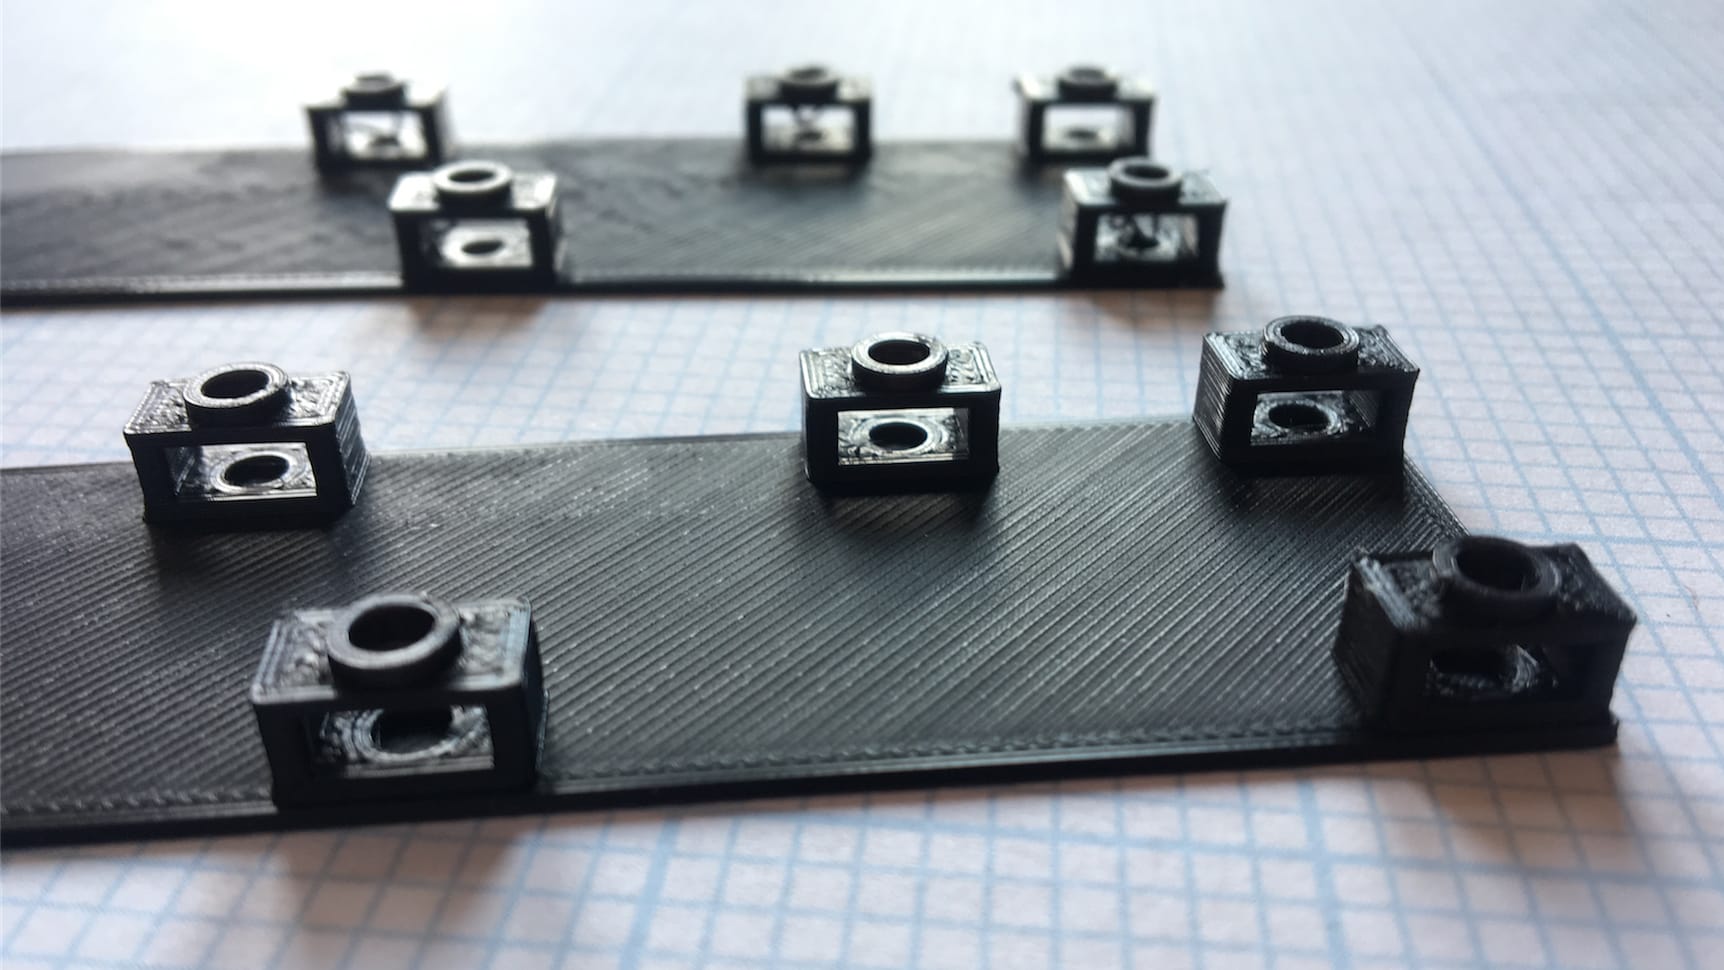 3D-printed PCB posts